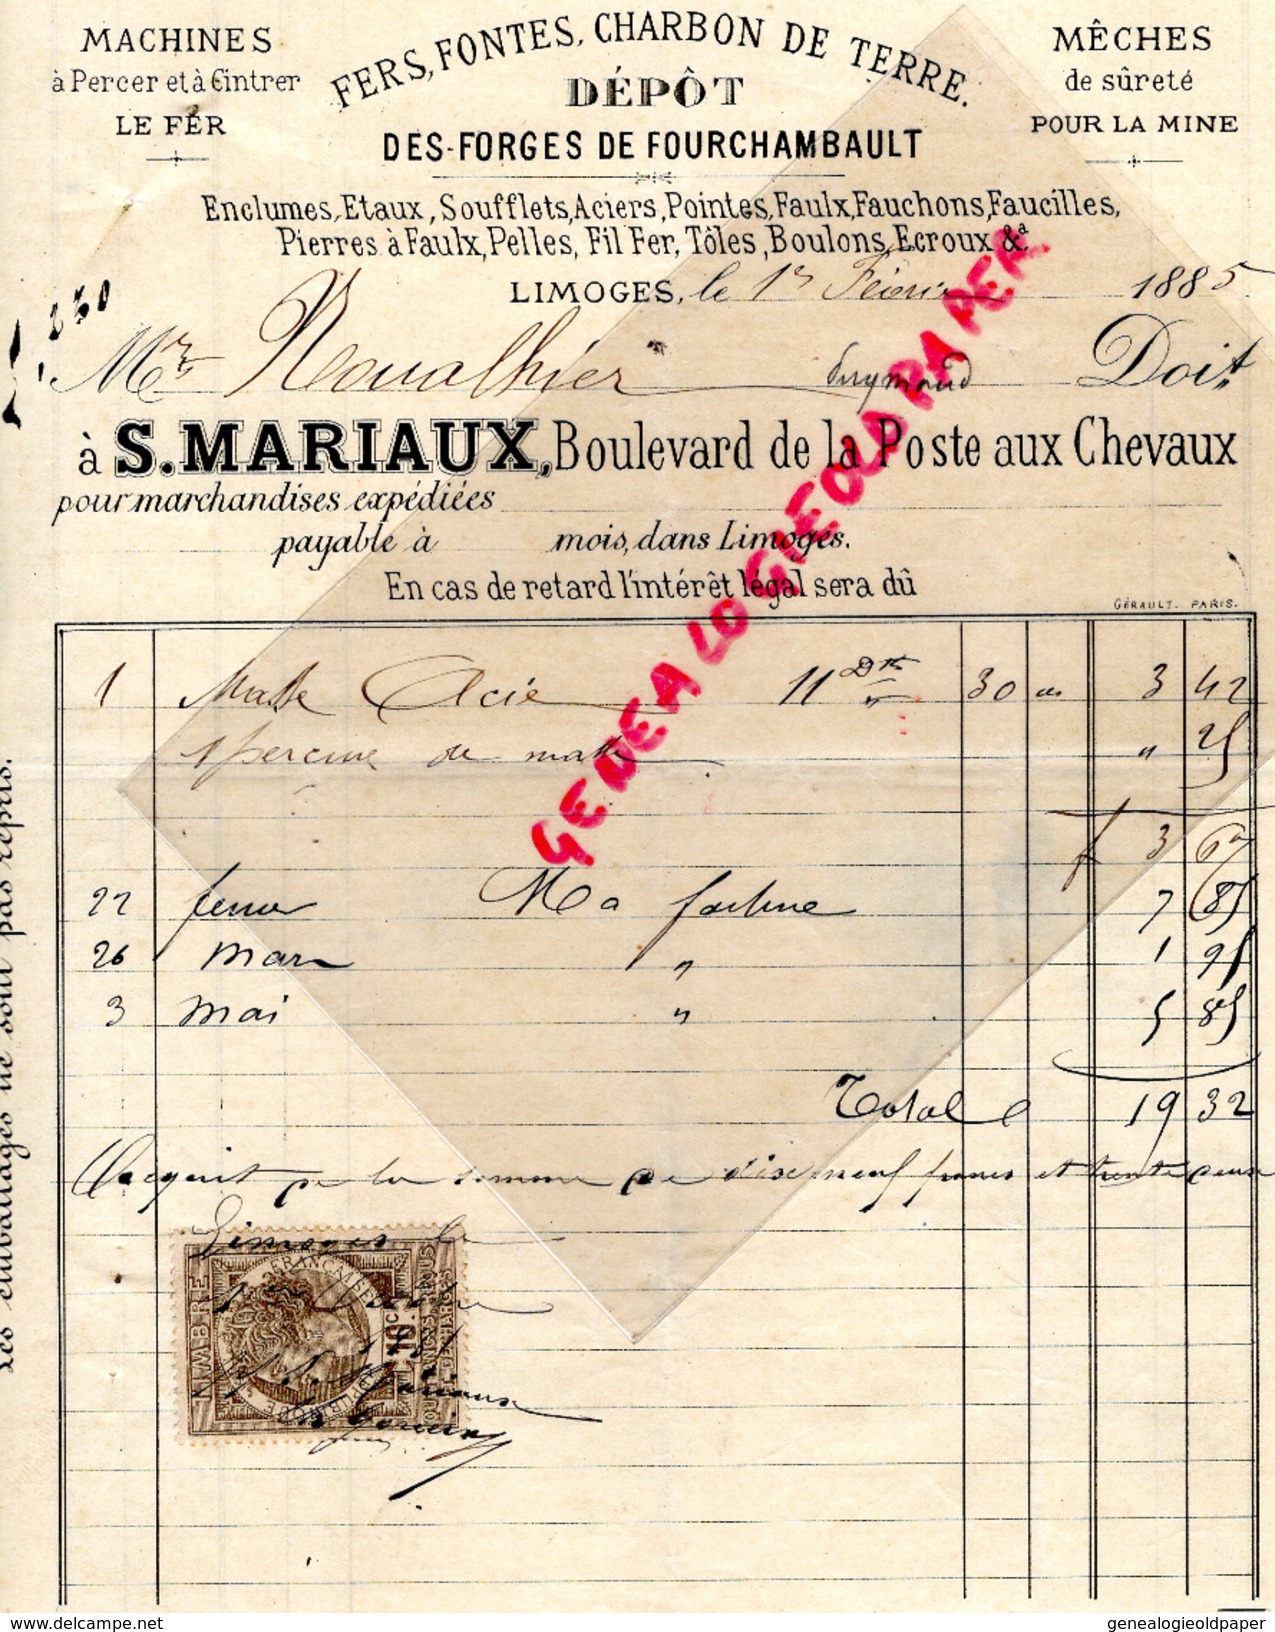 87 - LIMOGES - FACTURE S. MARIAUX BD DE LA POSTE AUX CHEVAUX- DEPOT FORGES FOURCHAMBAULT- FER FONTES CHARBON-1885 - 1800 – 1899